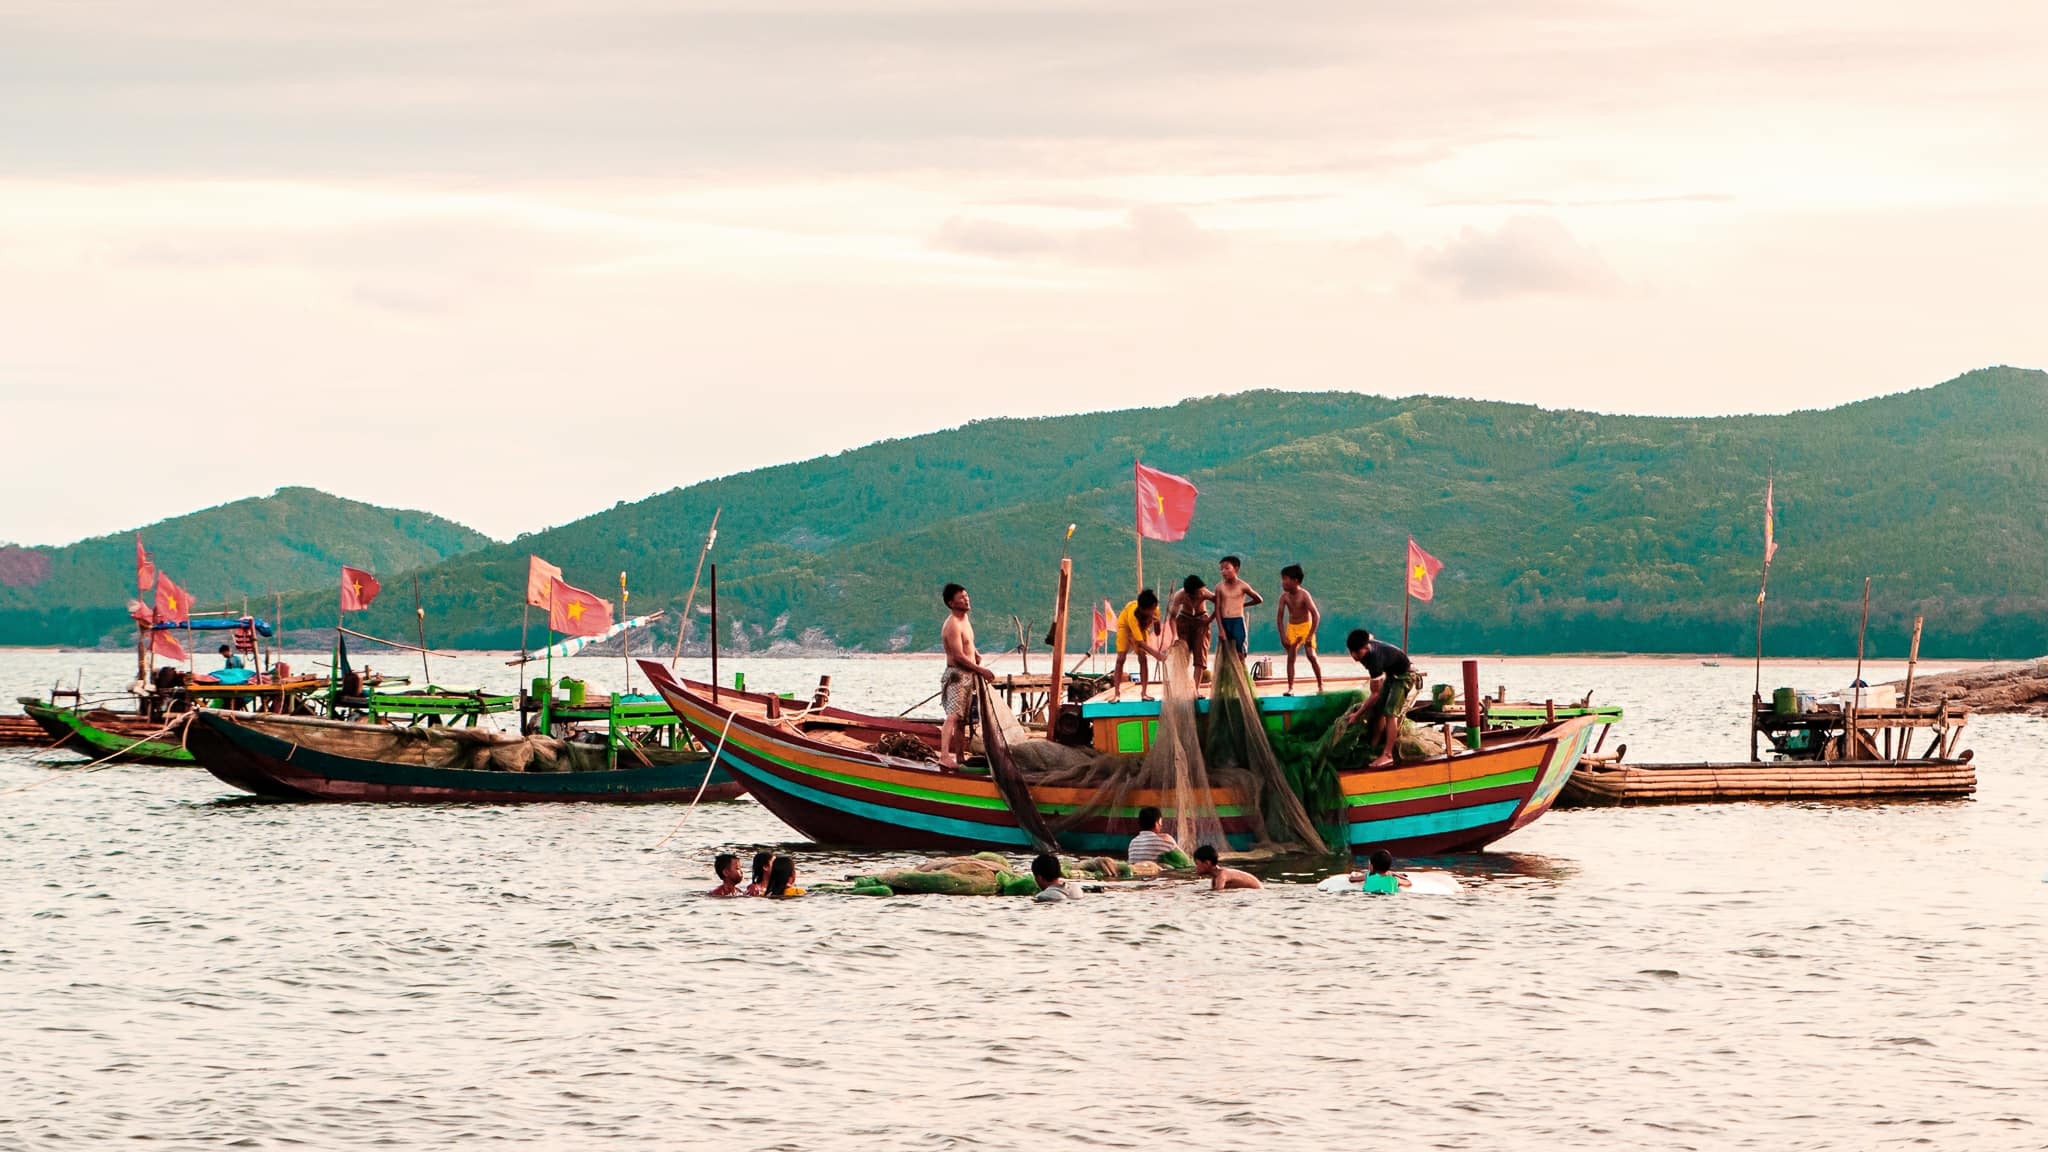 Đông Minh là một làng chài nhỏ thuộc xã Quỳnh Lập với số lượng ngư dân khiêm tốn, chủ yếu chỉ đánh bắt gần bờ, phụ thuộc vào thời tiết mà ra biển lúc sáng sớm hoặc chiều tối. Ảnh: Duy Sơn